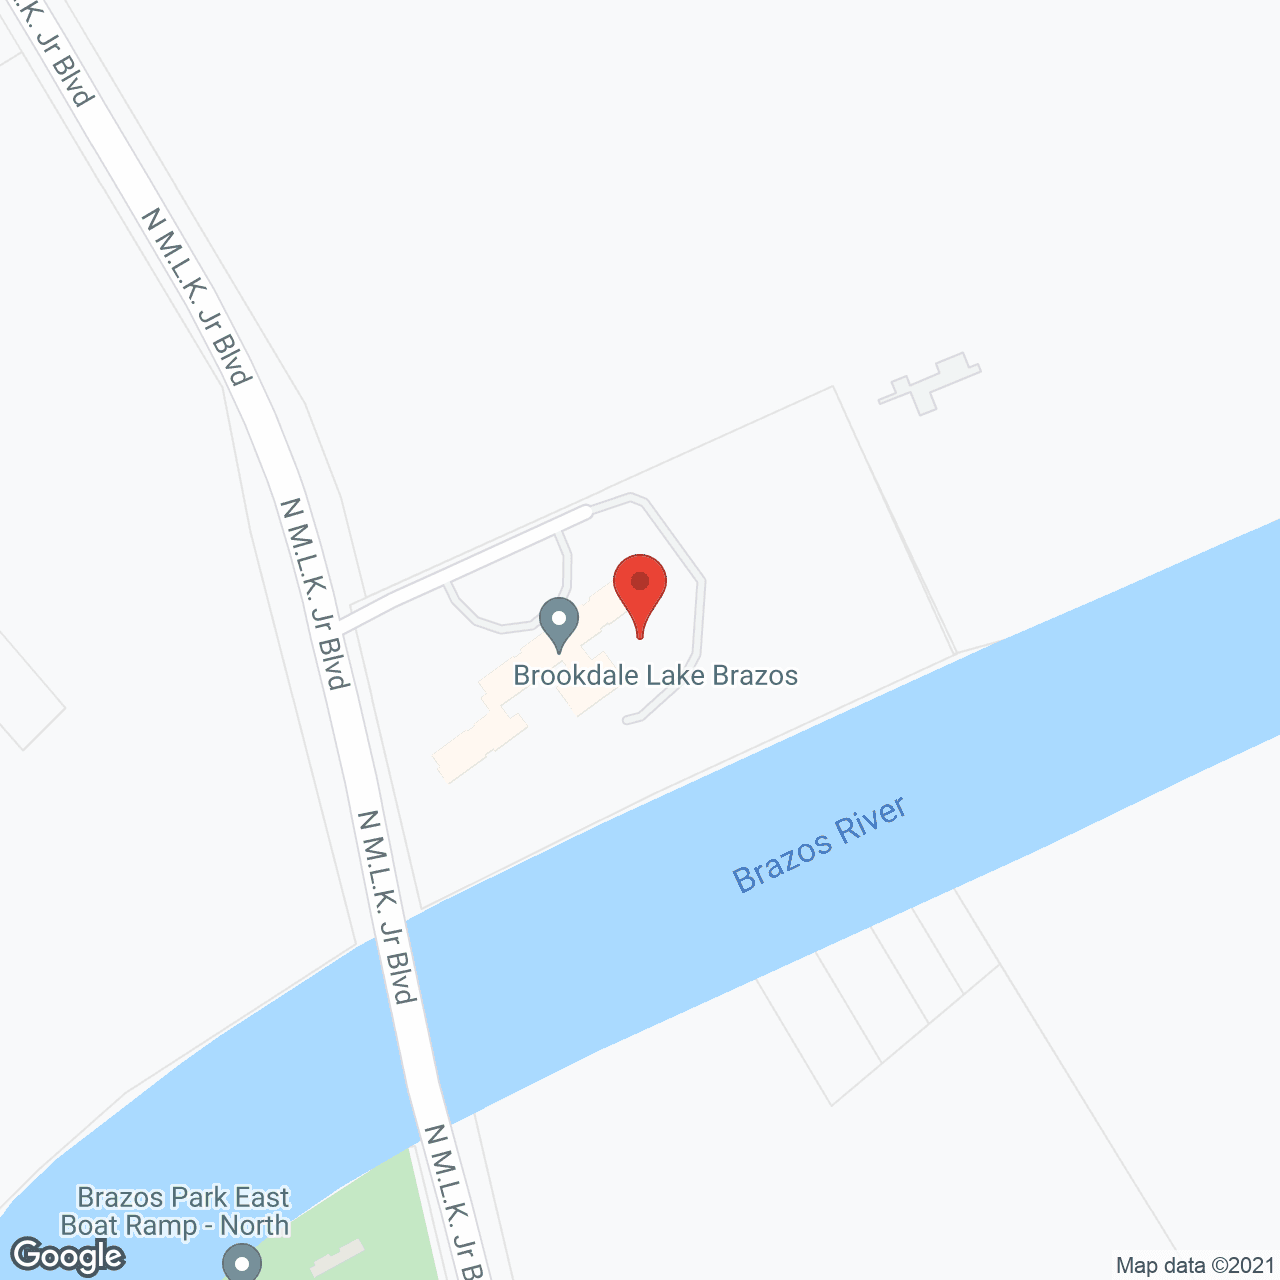 Brookdale Lake Brazos in google map